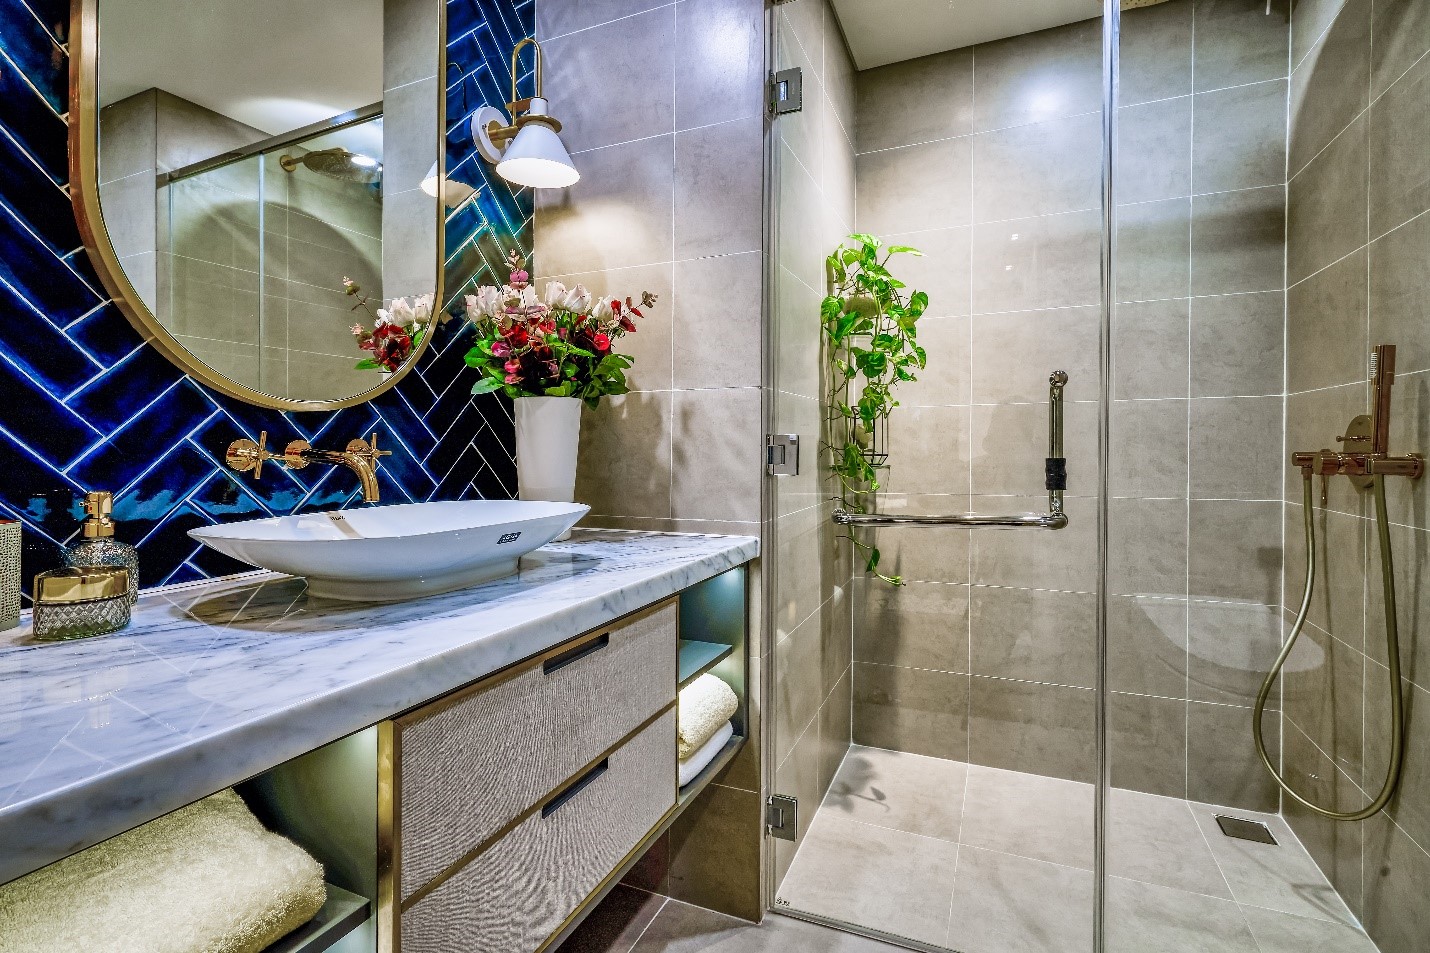 Nội thất nhà tắm đang trang bị các thiết bị thương hiệu như: vòi rửa Grohe, bồn rửa Toto, vòi sen tắm âm tường Davas…